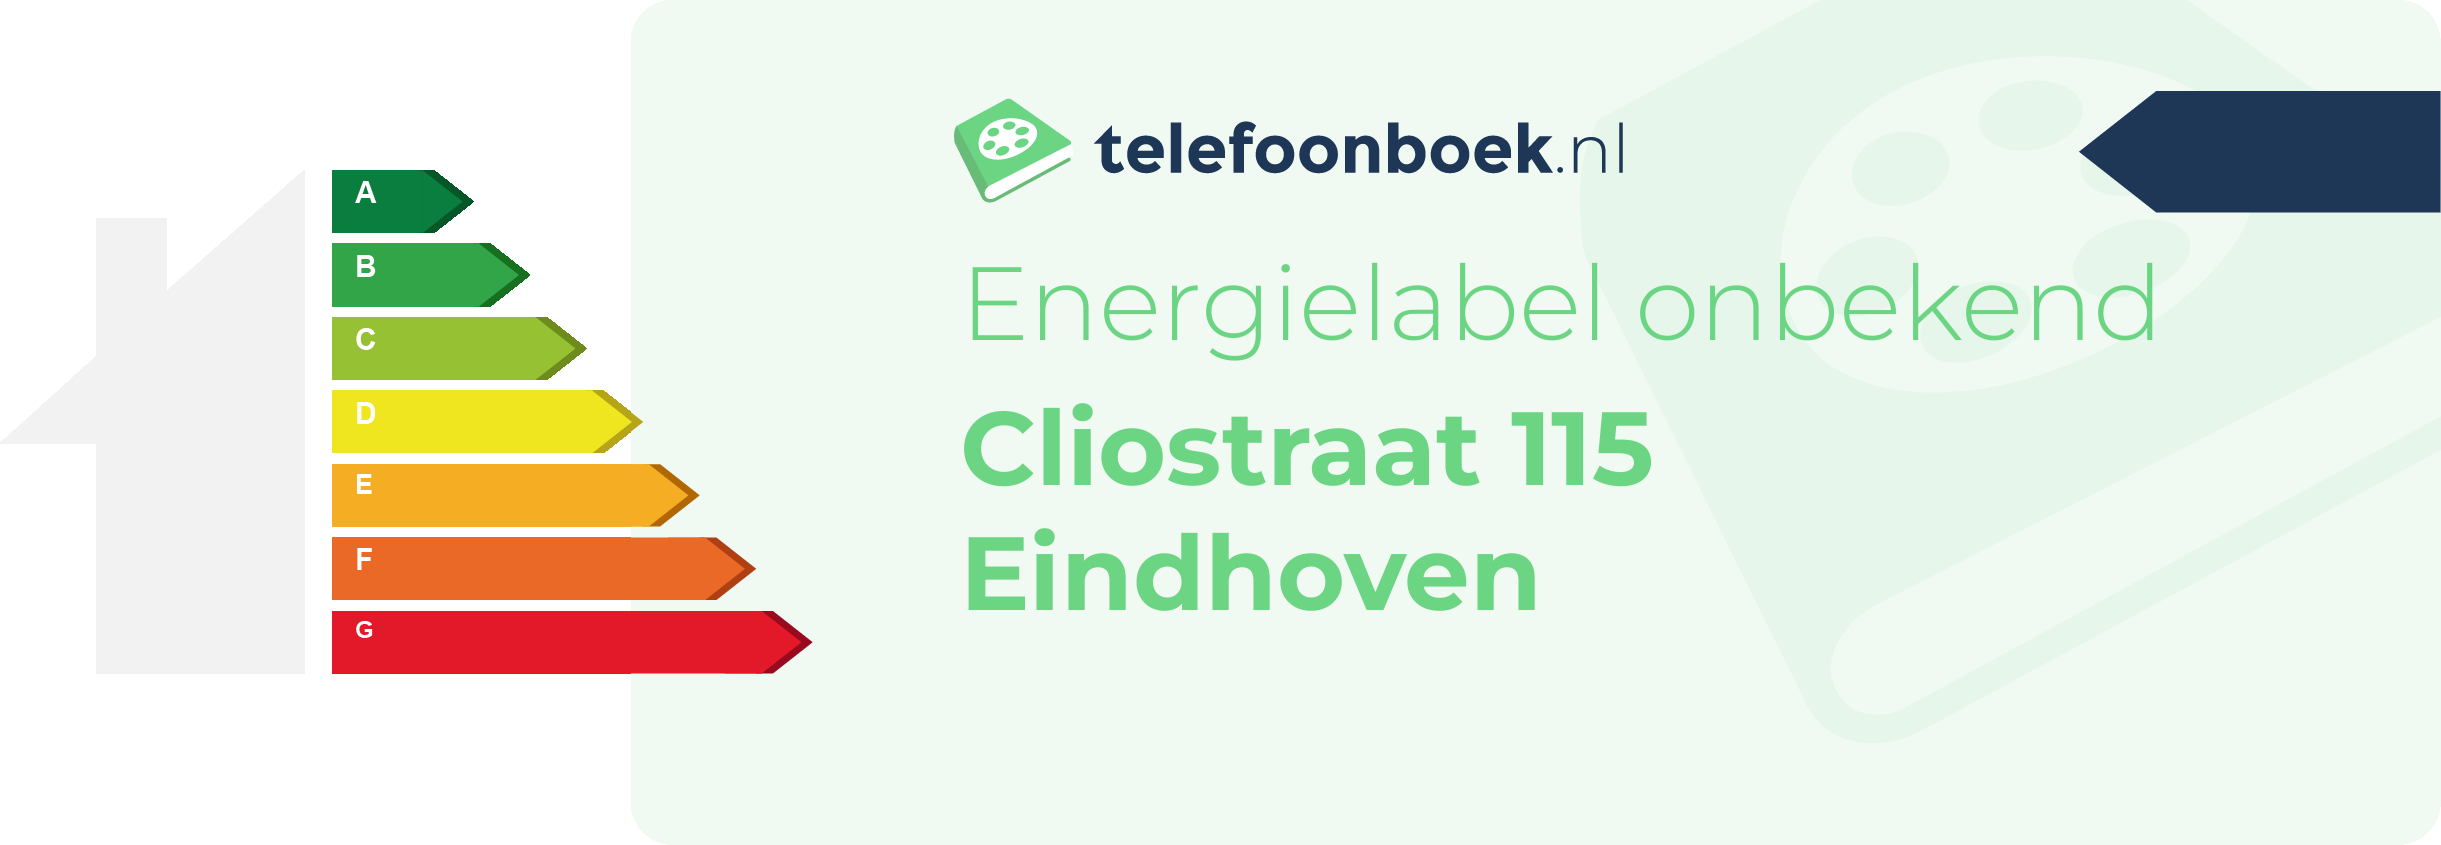 Energielabel Cliostraat 115 Eindhoven